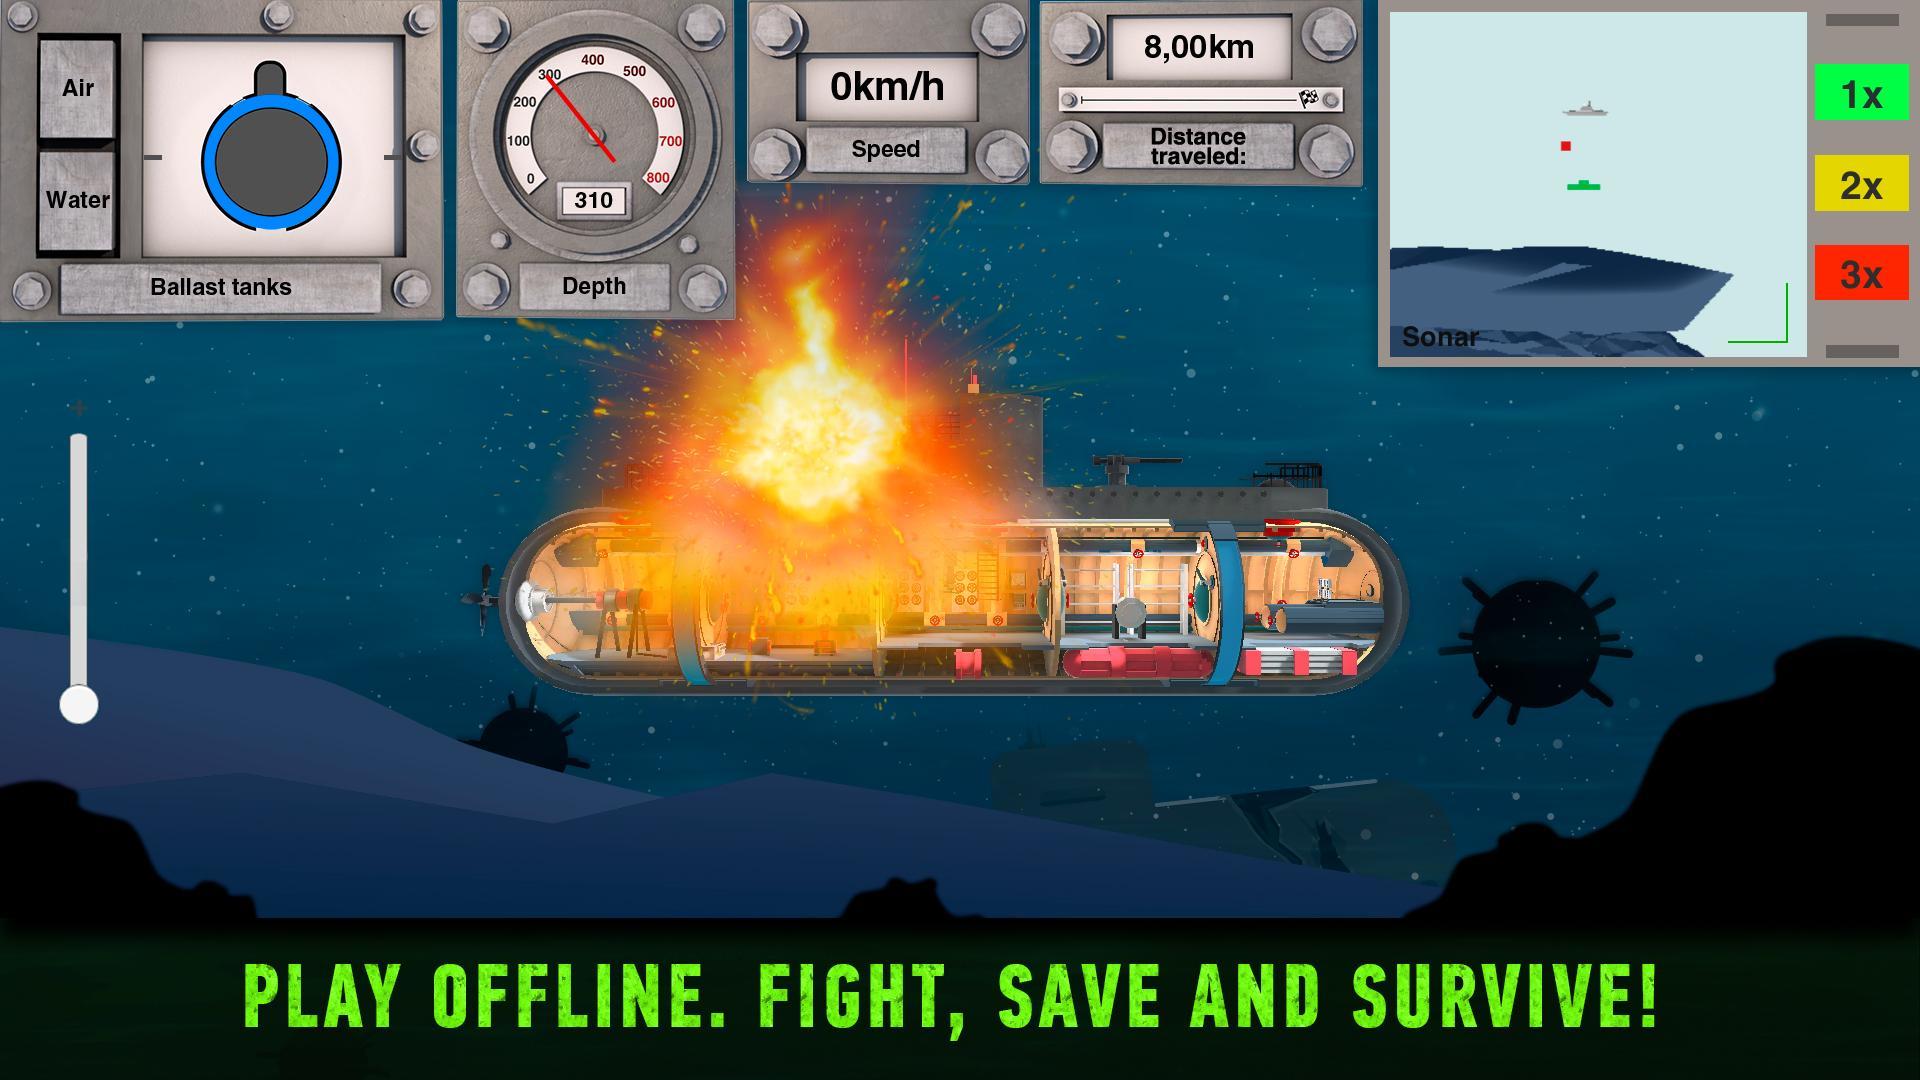 Screenshot 1 of สงครามเรือดำน้ำ: เกมส์เรือดำน้ำ 2.17